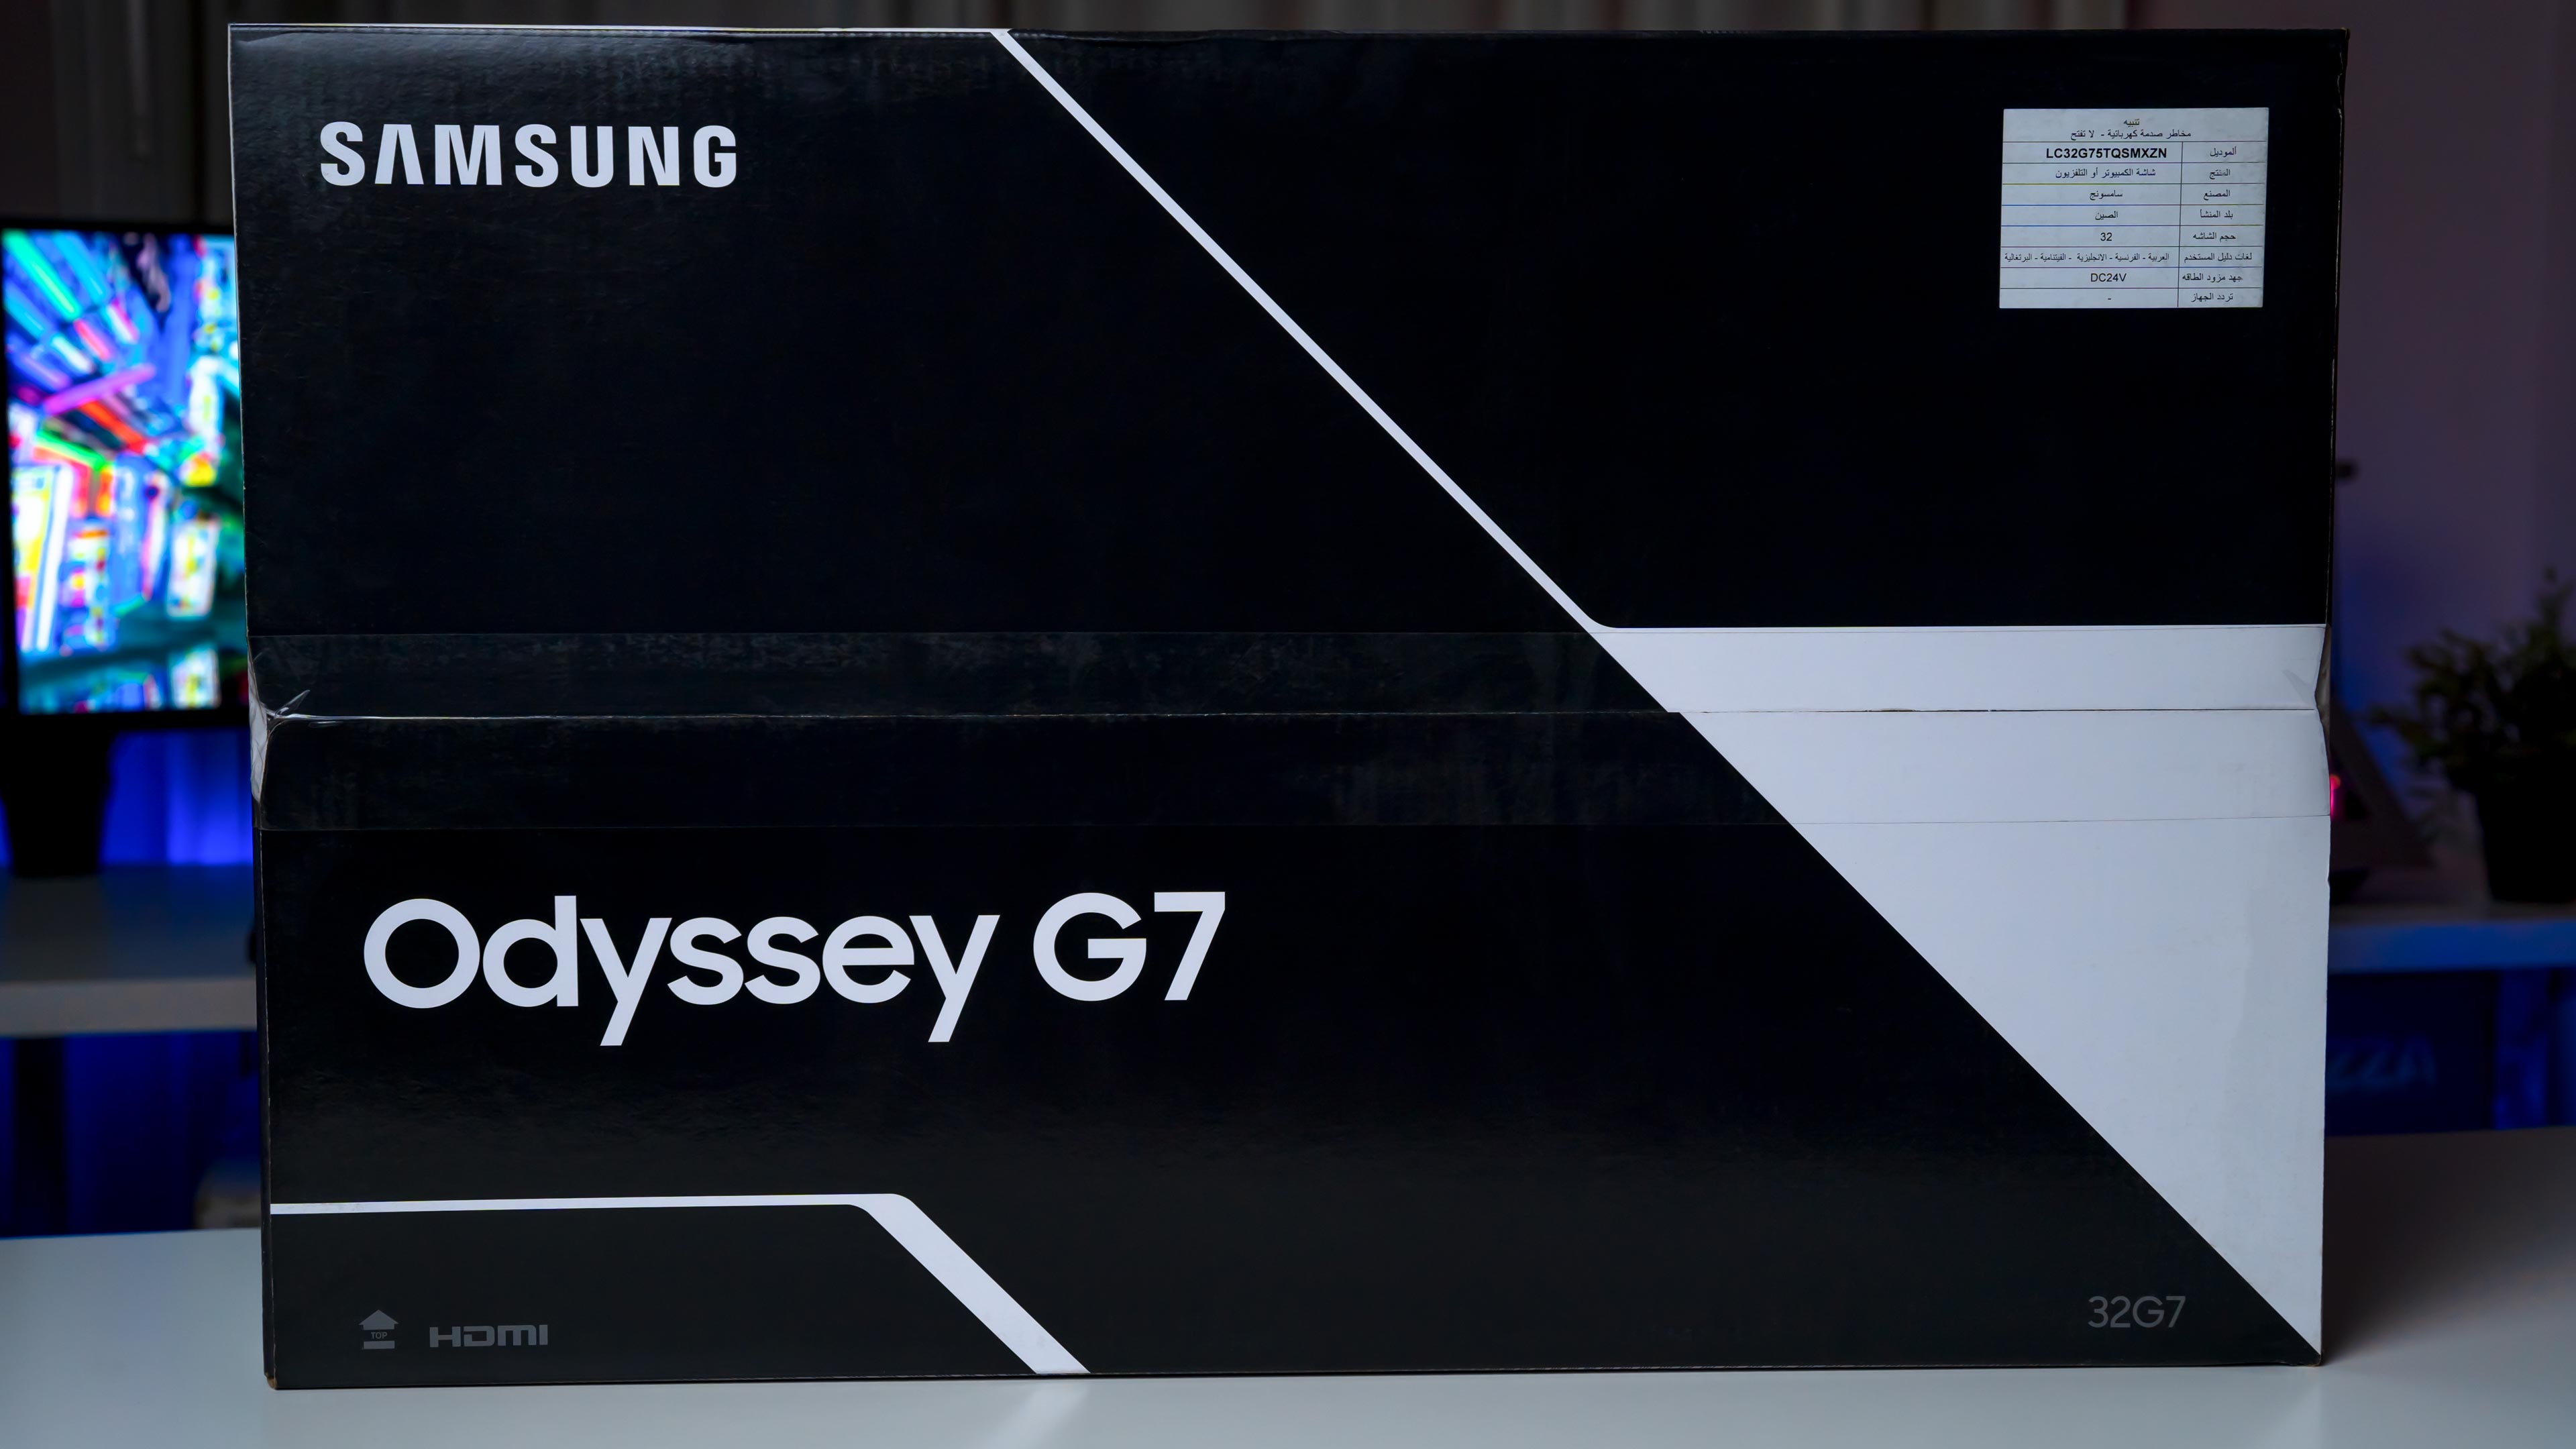 Samsung Odyssey G7 LC32G75T Box (5)